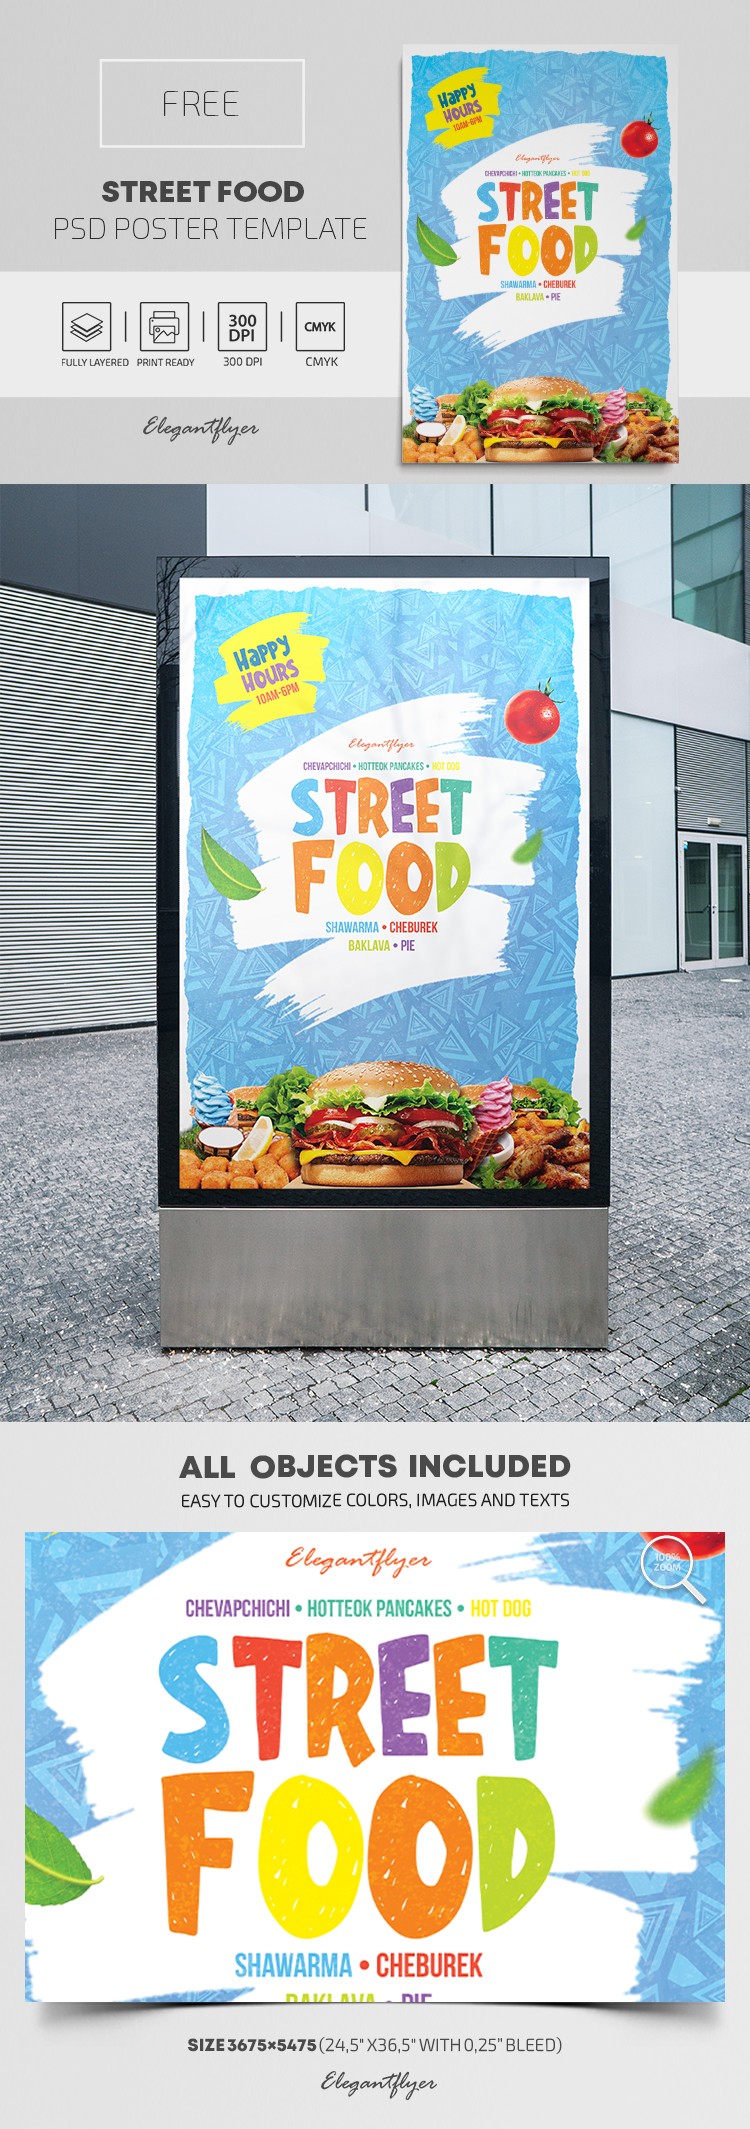 Affiche de Street Food by ElegantFlyer